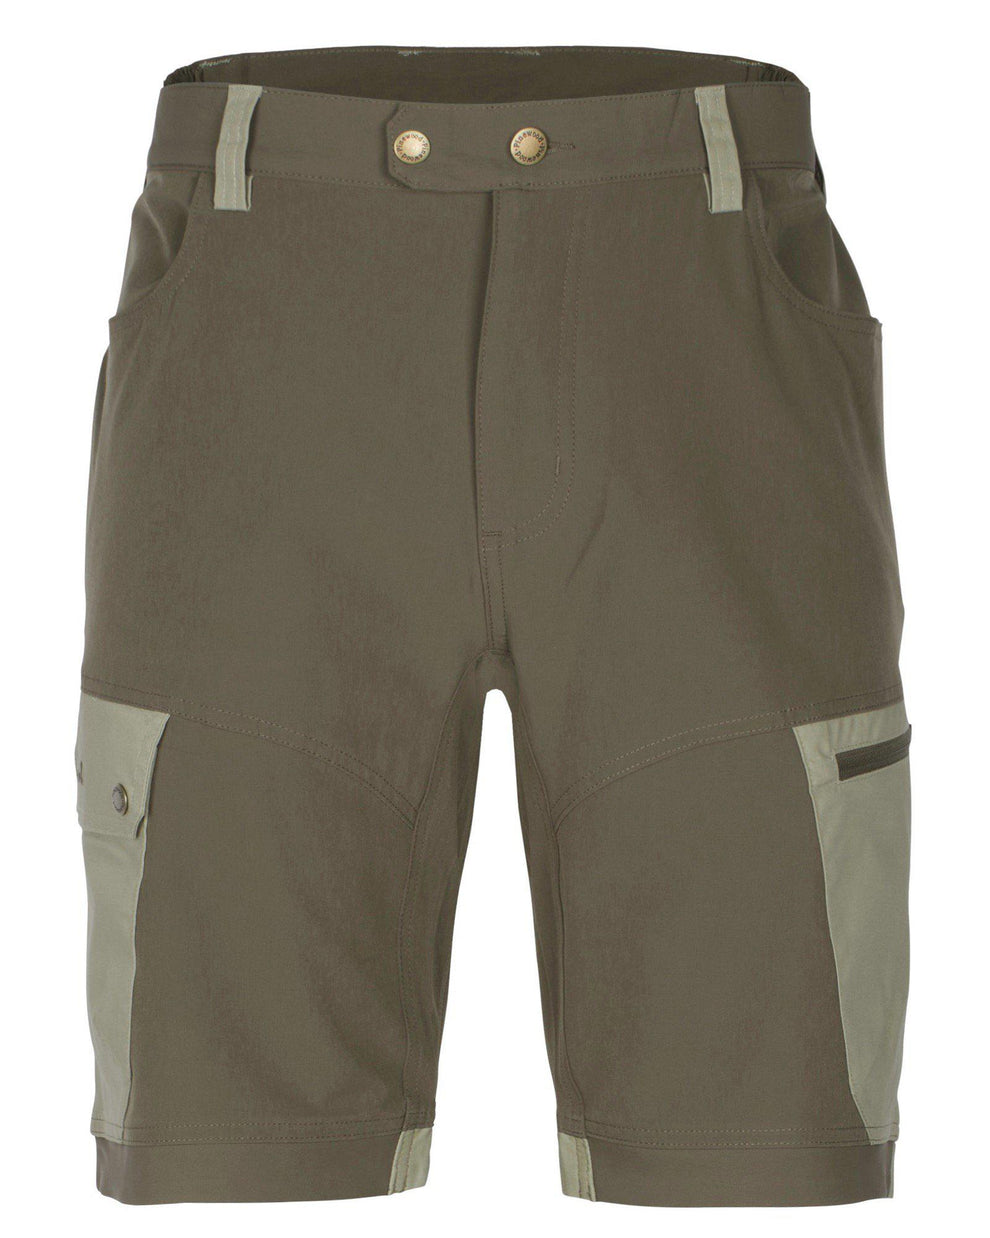 5316-272-01_Finnveden-Trail-Hybrid-Shorts-Mens_Earth-Brown-Light-Khaki